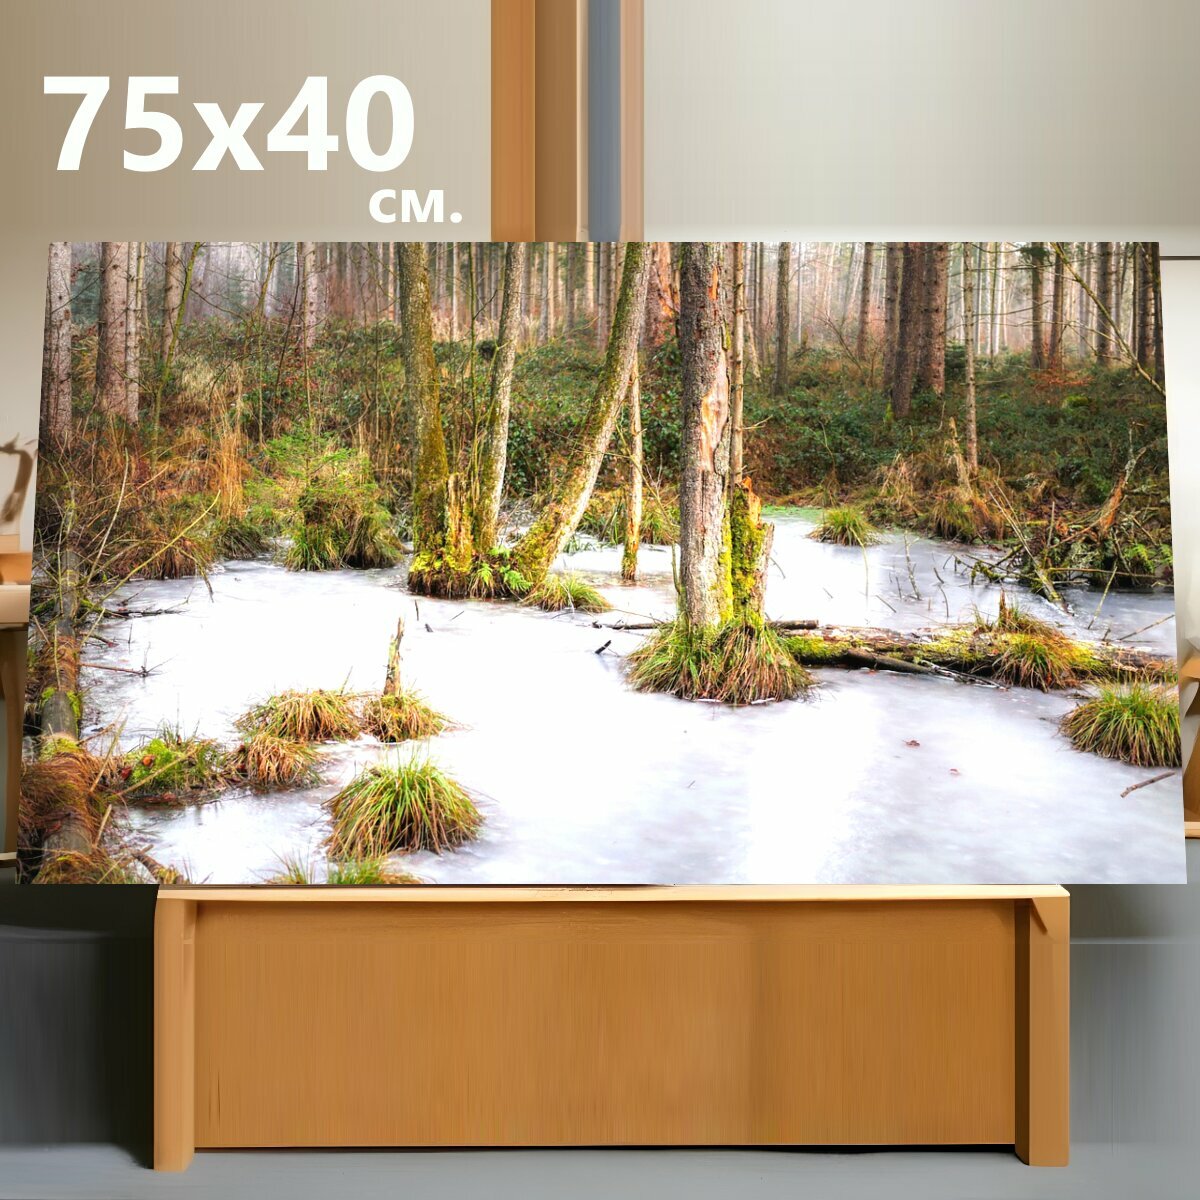 Картина на холсте "Деревья, лес, лед" на подрамнике 75х40 см. для интерьера